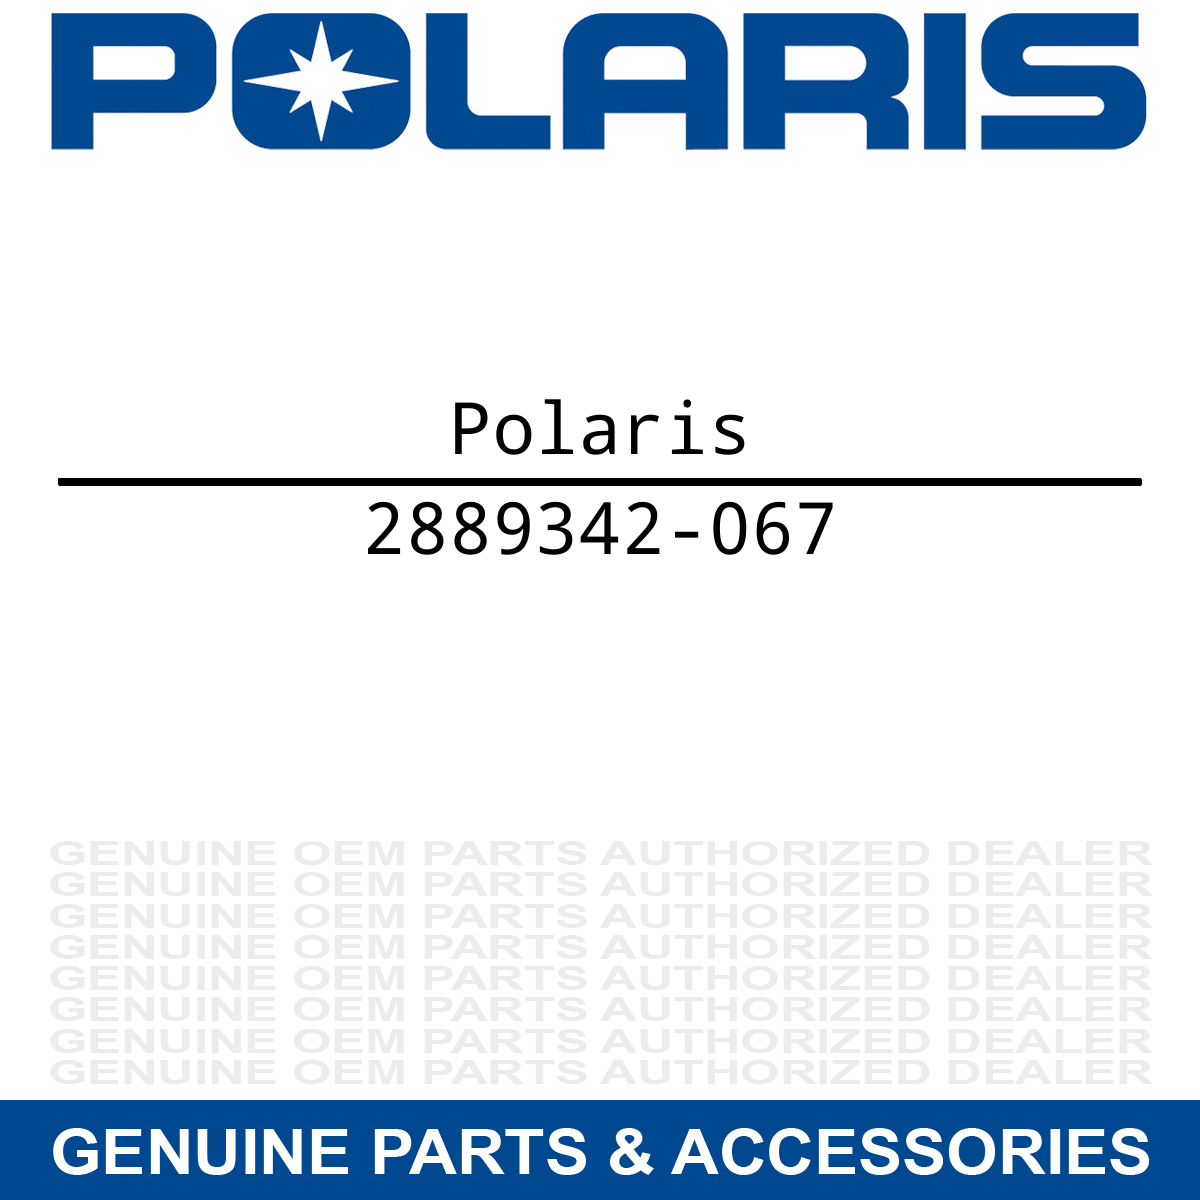 Polaris 2889342-067